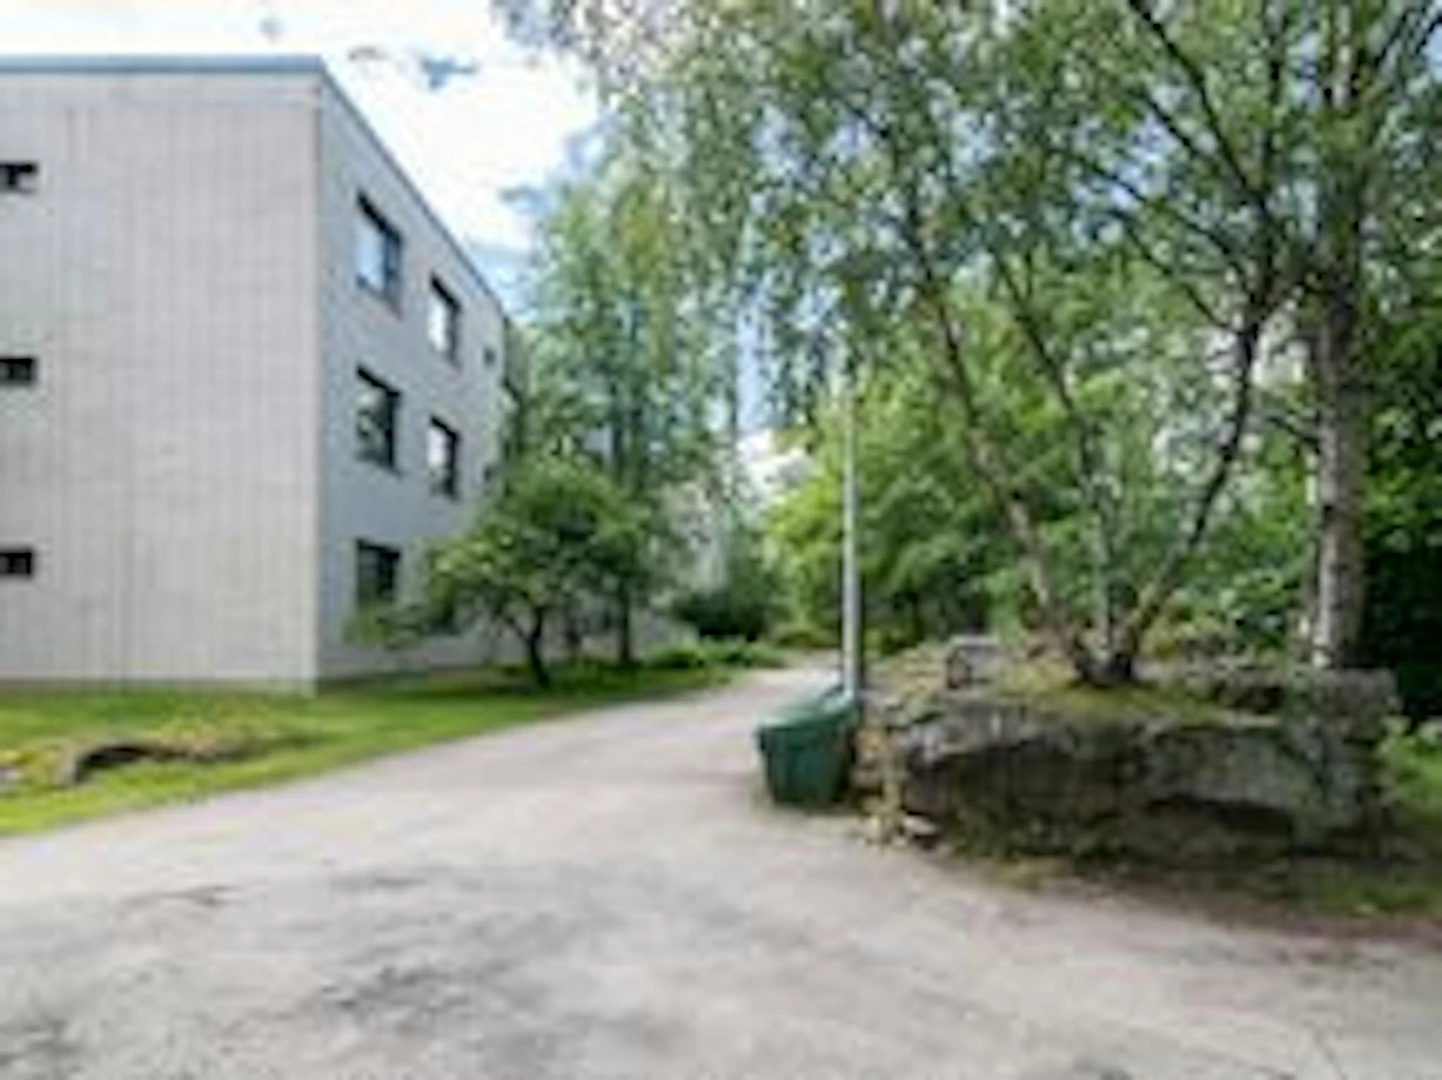 Apartamento totalmente mobilado em Espoo